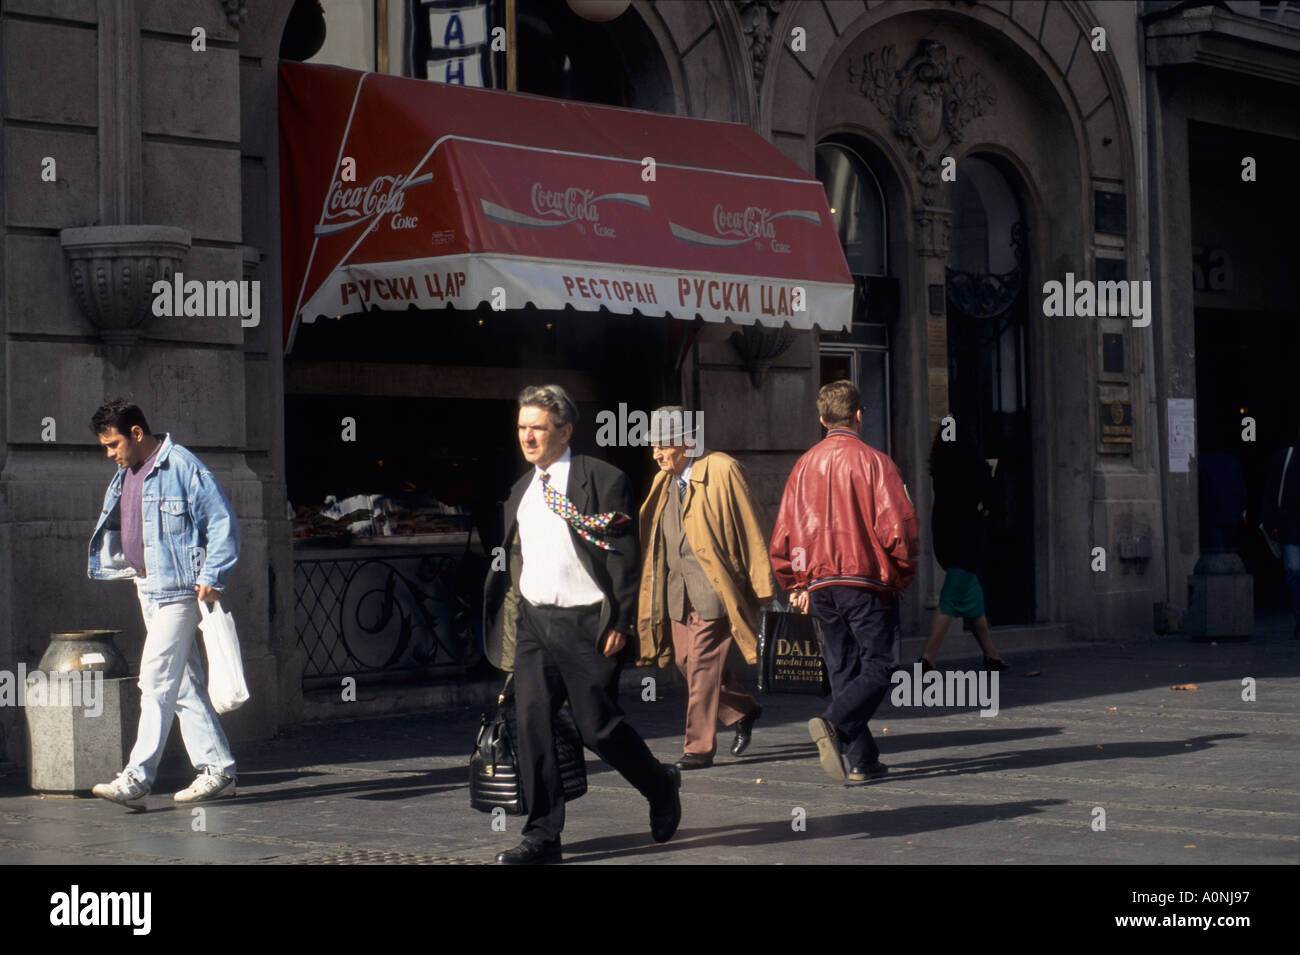 A Belgrado, in Serbia. La gente che camminava per strada davanti al ristorante chiamato zar russo. Foto Stock